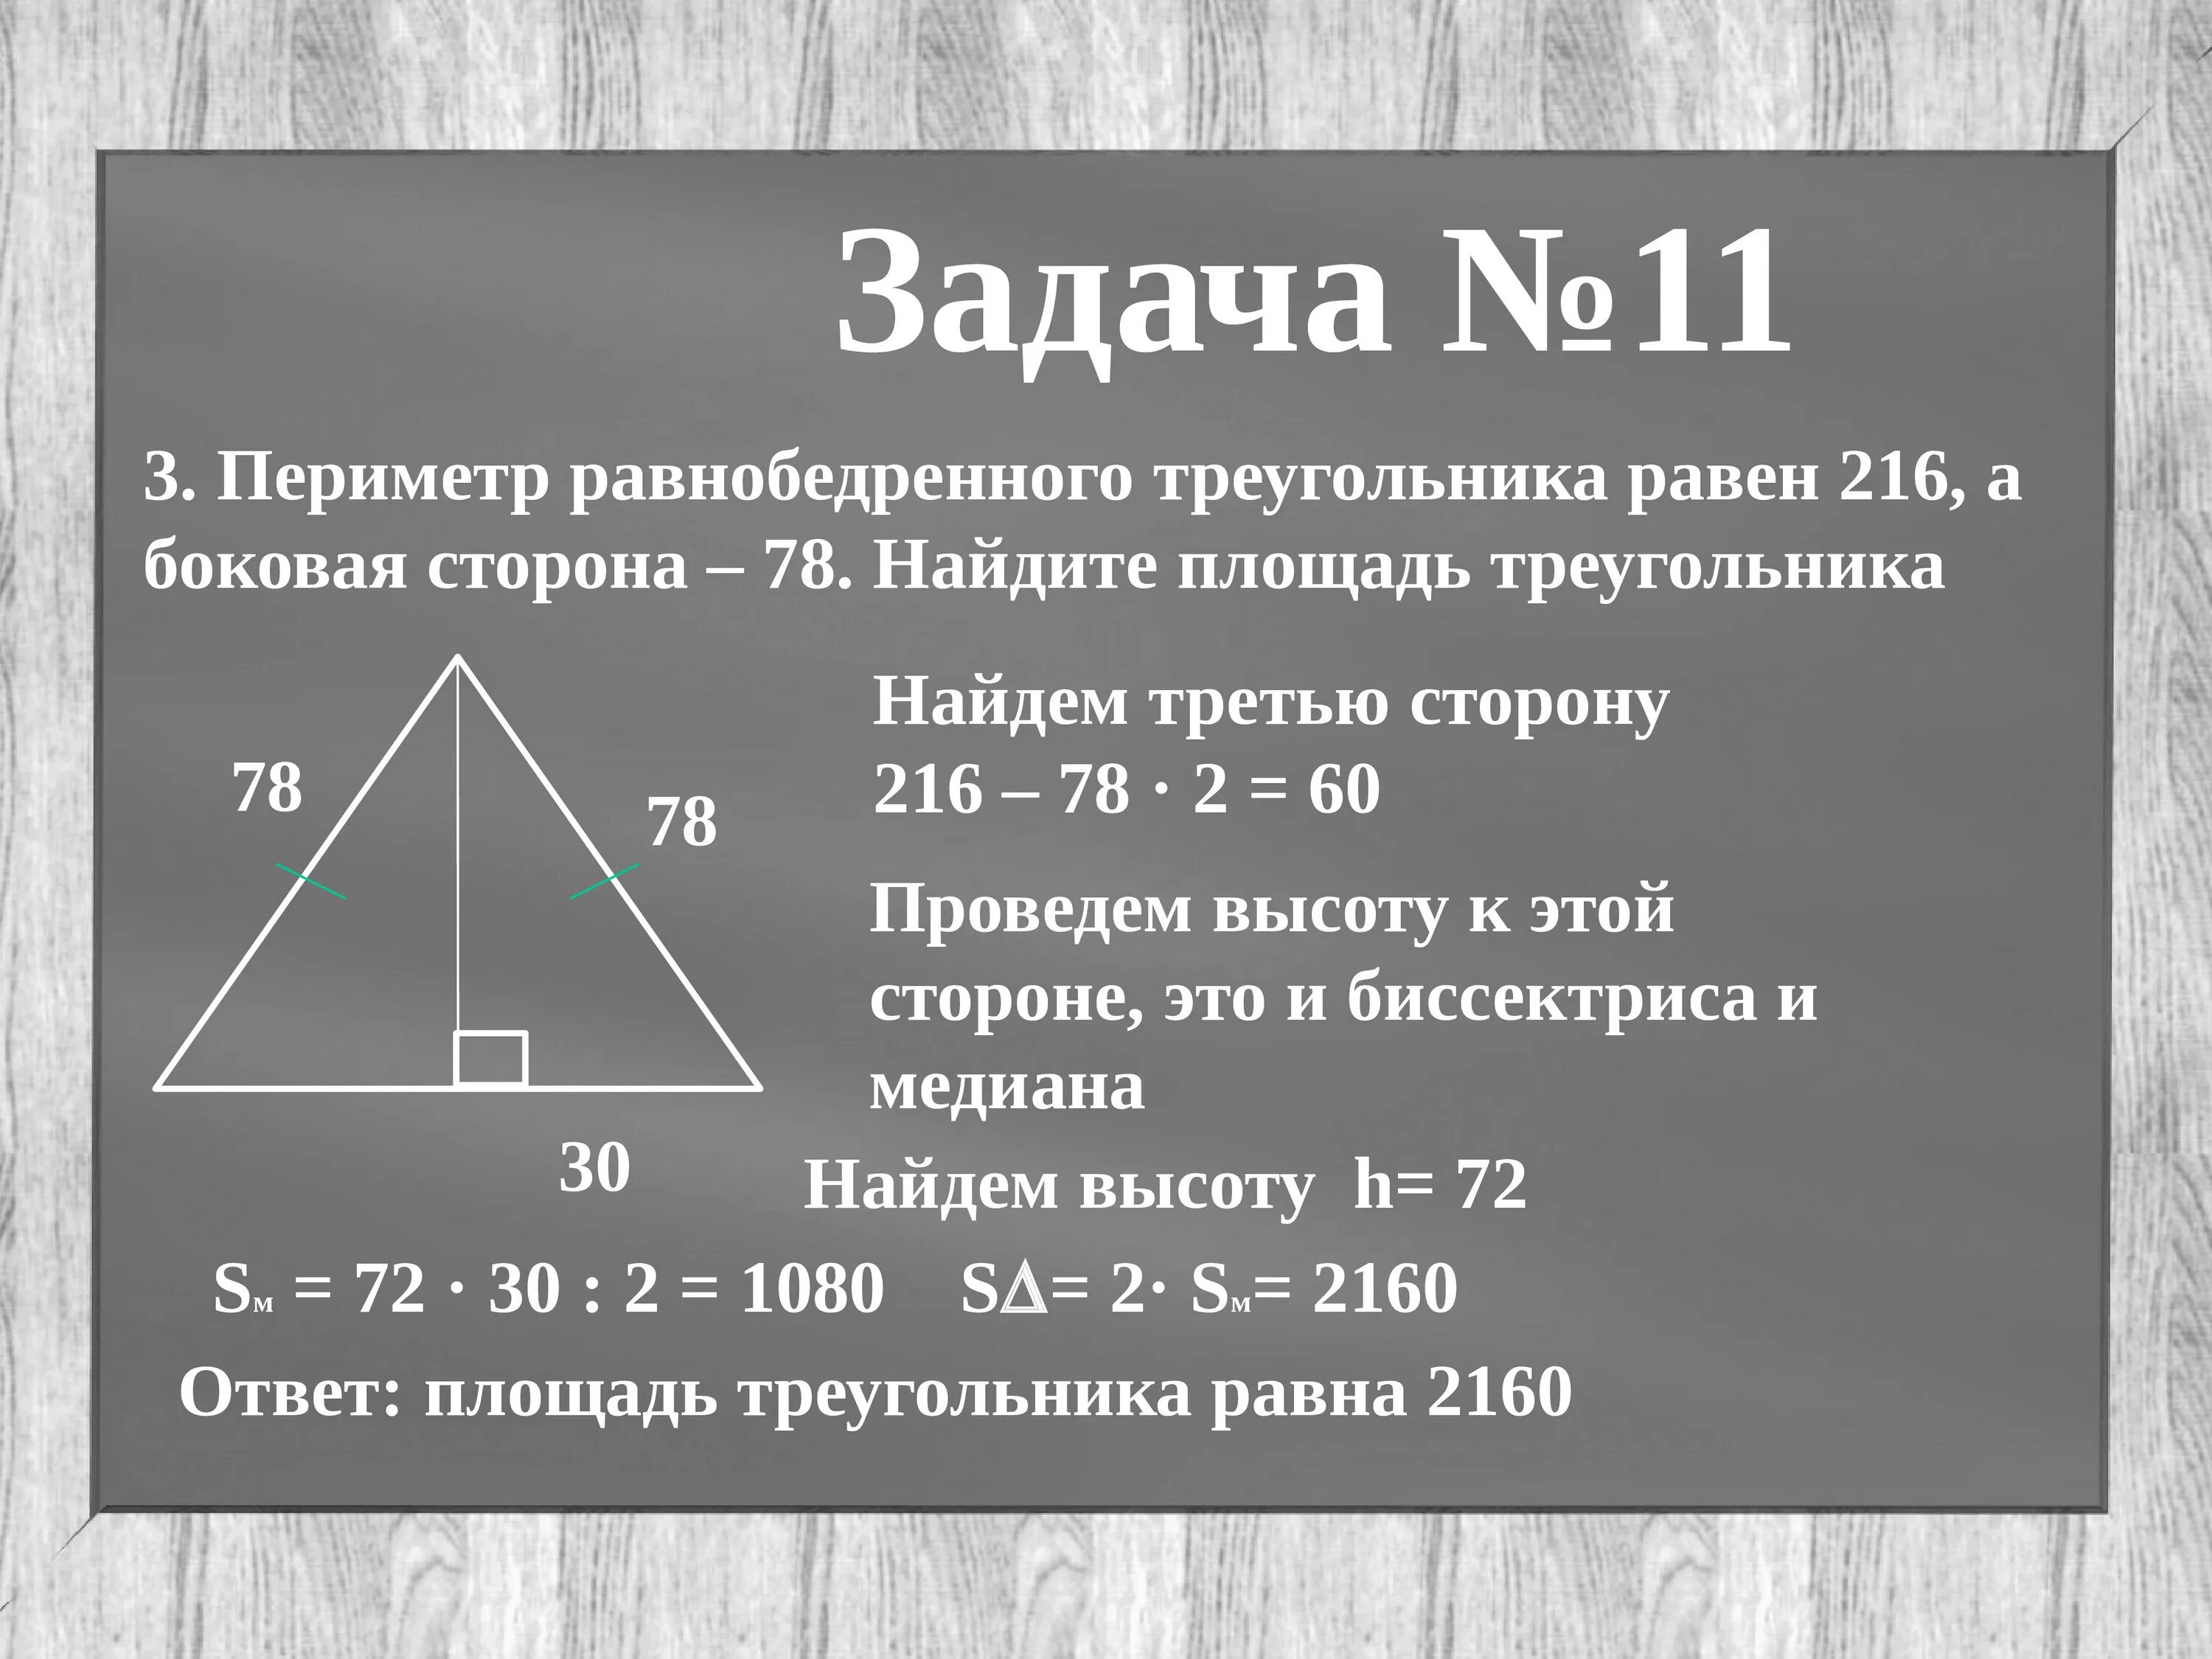 Сторон 78. Периметр равнобедренногоьрекгольника. Площадтравнобедренного треугольника. Площадь равнобедренноготеругольника. Периметр равнобедренного треугольника равен.